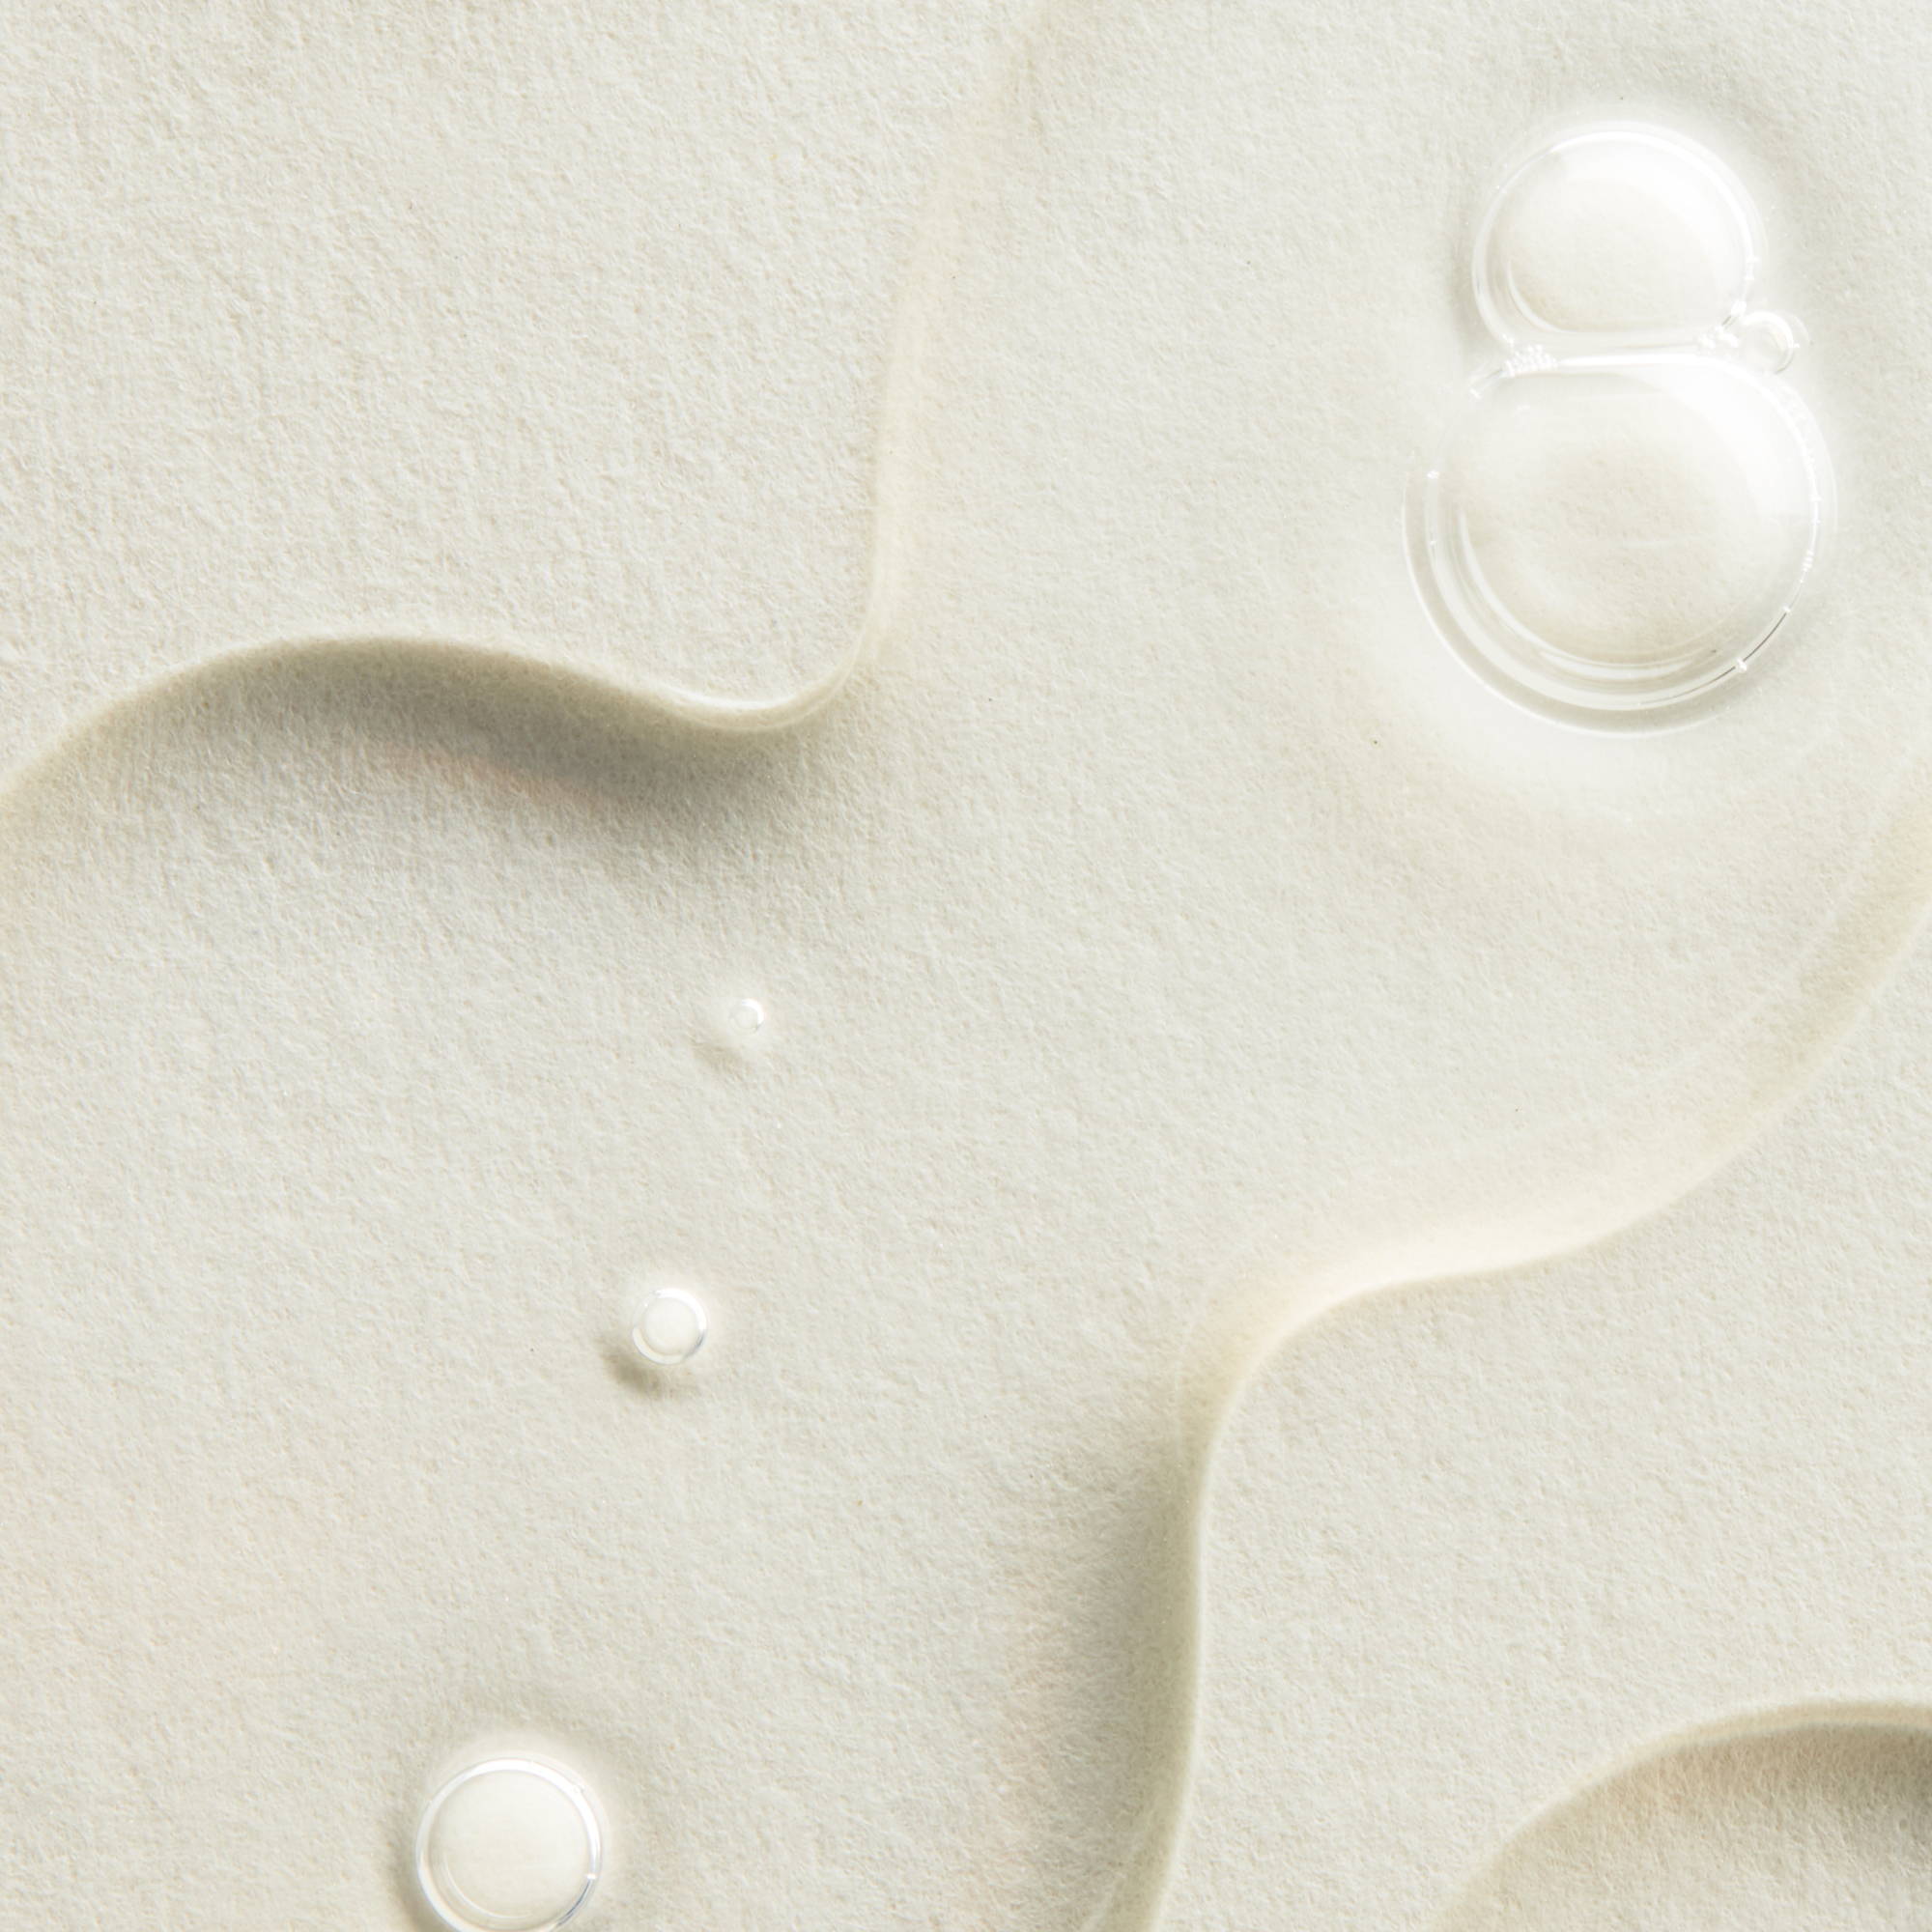 a close up image of droplets of a liquid toner